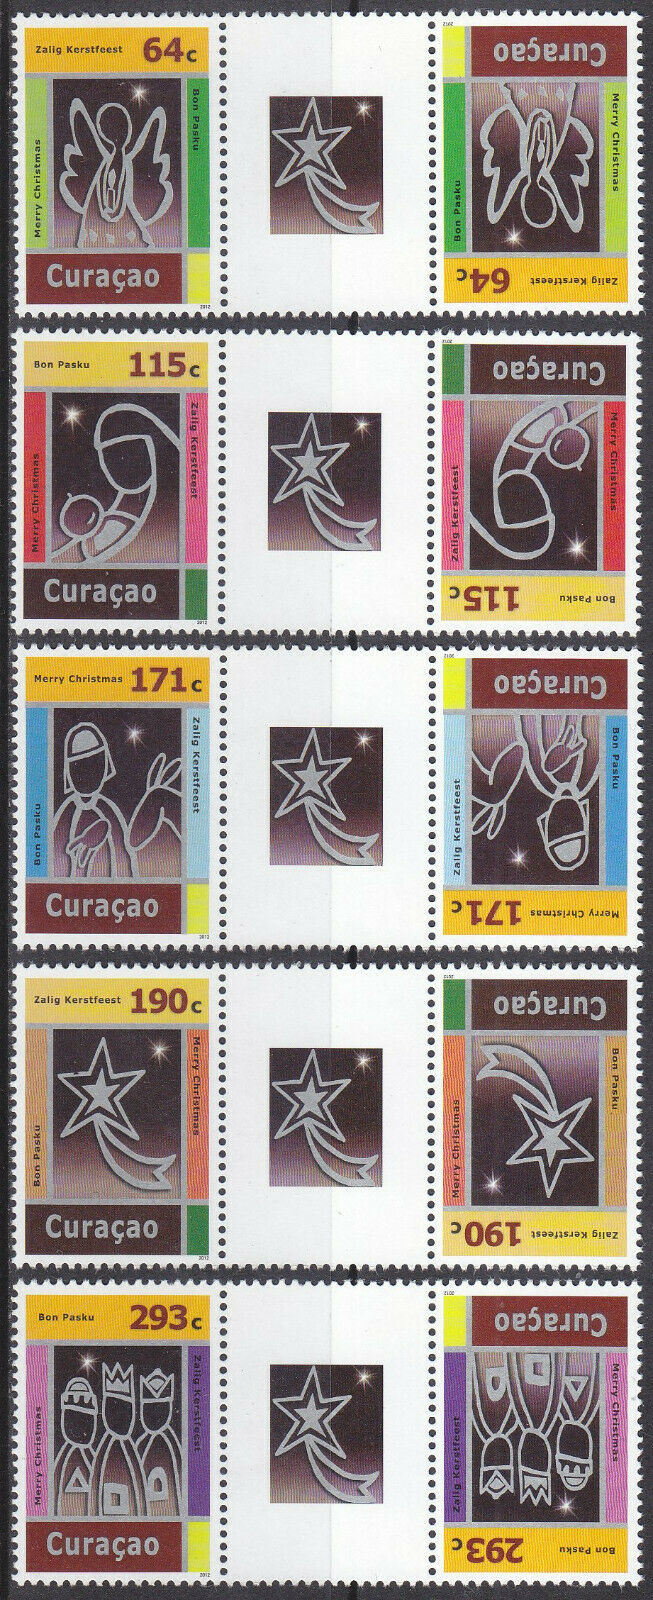 Curacao Issue 2012 (107-111bp) Christmas